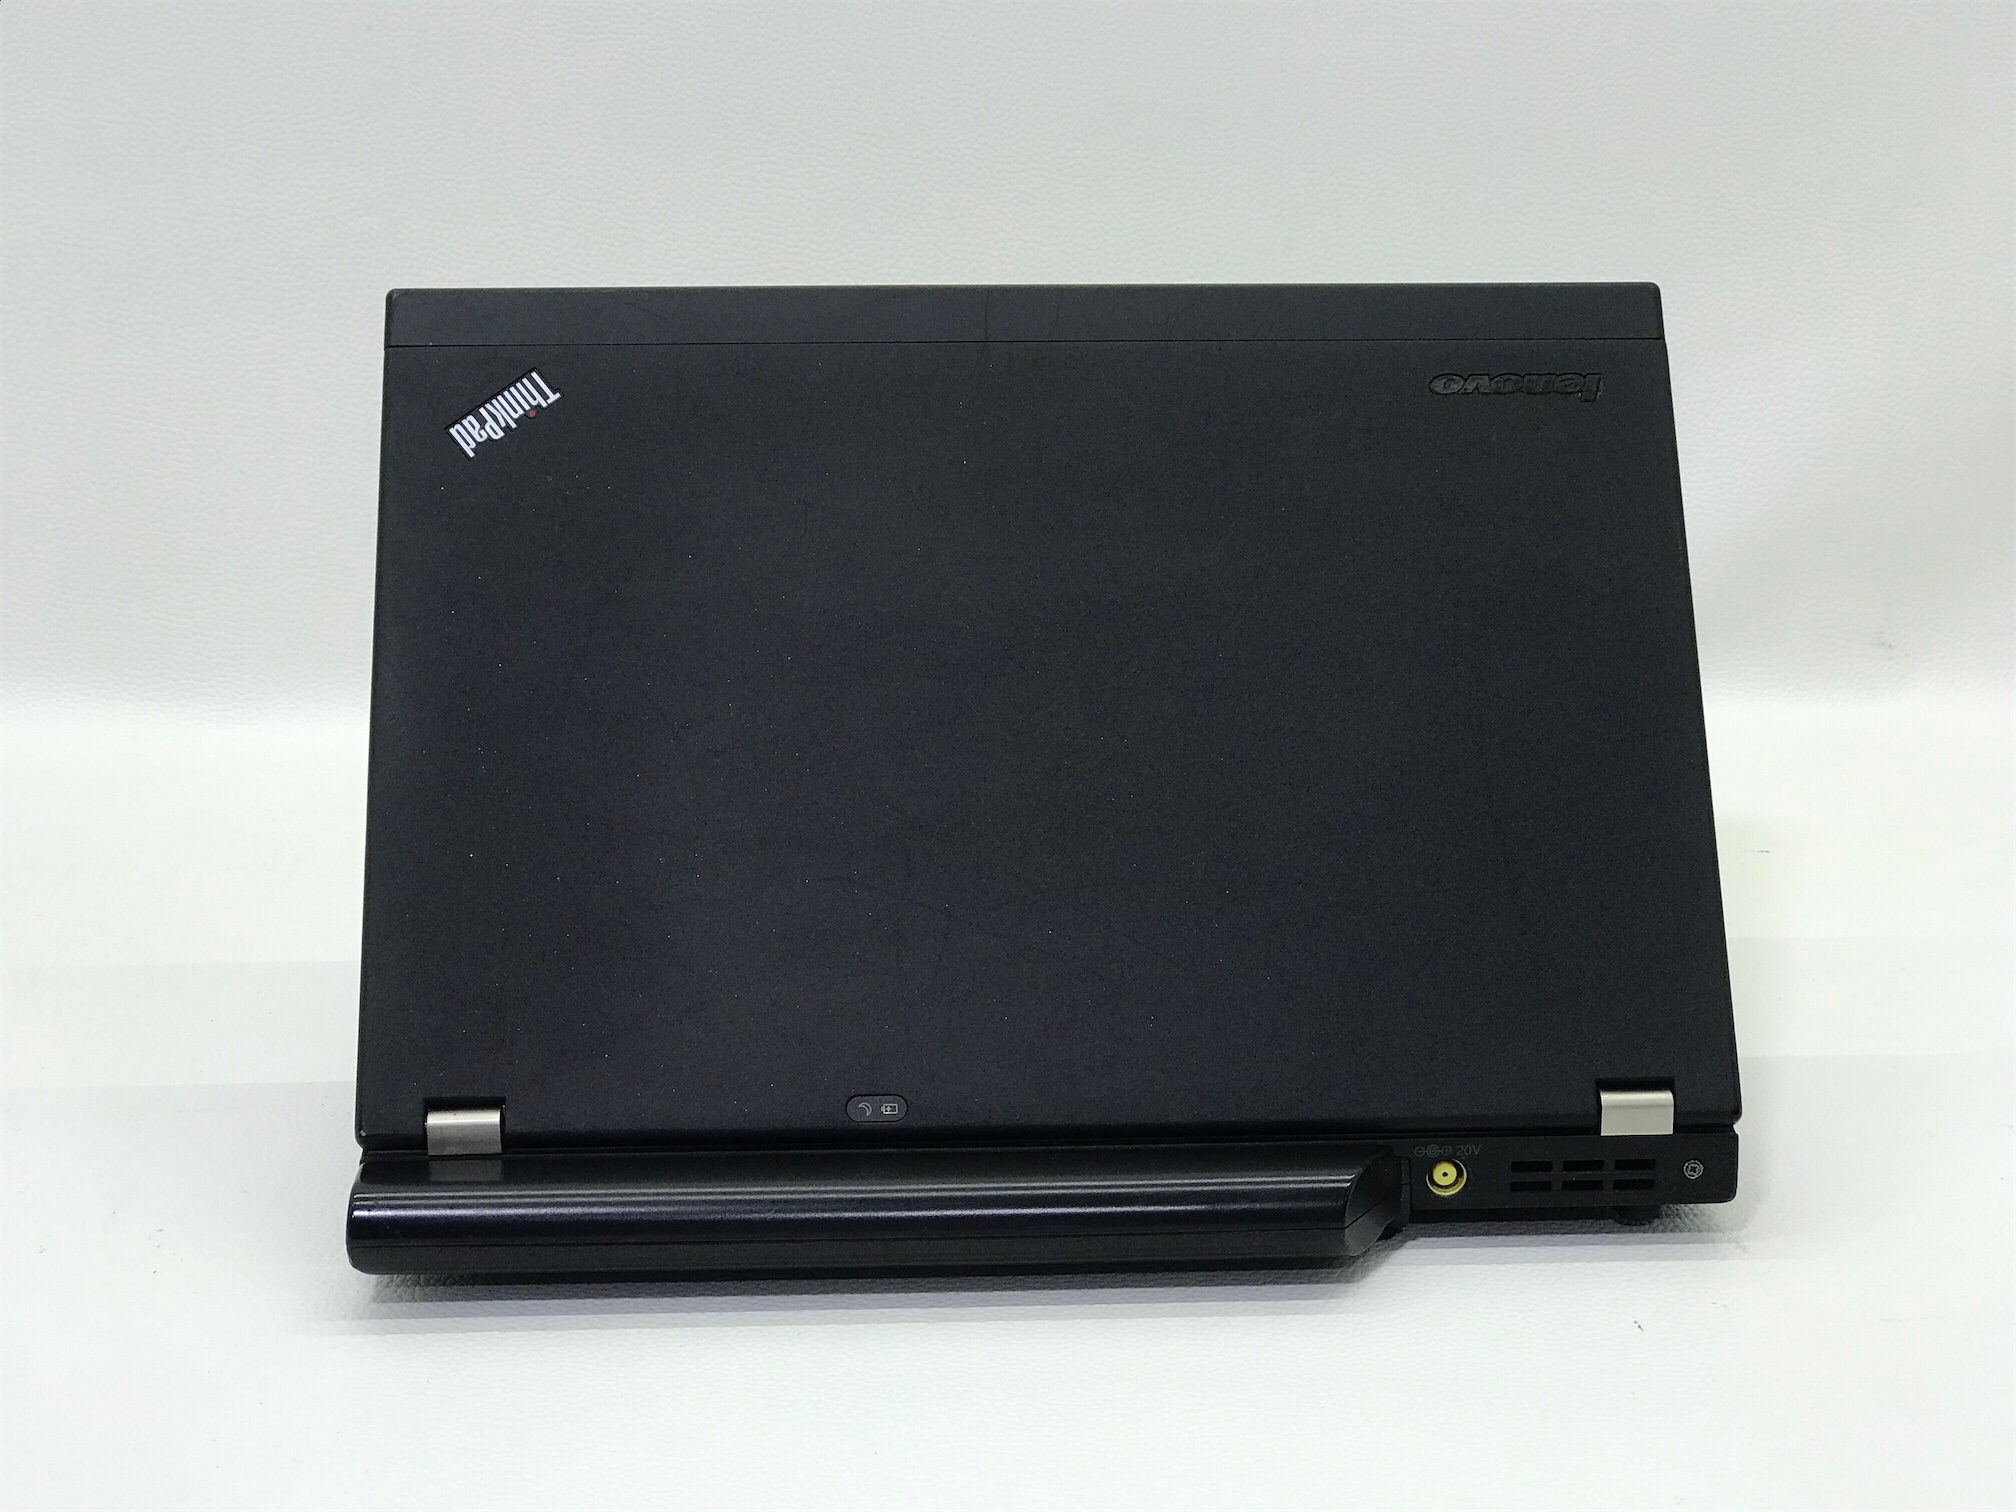 computadoras y laptops - i5 Laptop Lenovo ThinkPad X230 Mouse y Mochila 🎒 GRATIS 1 Año de Garantía